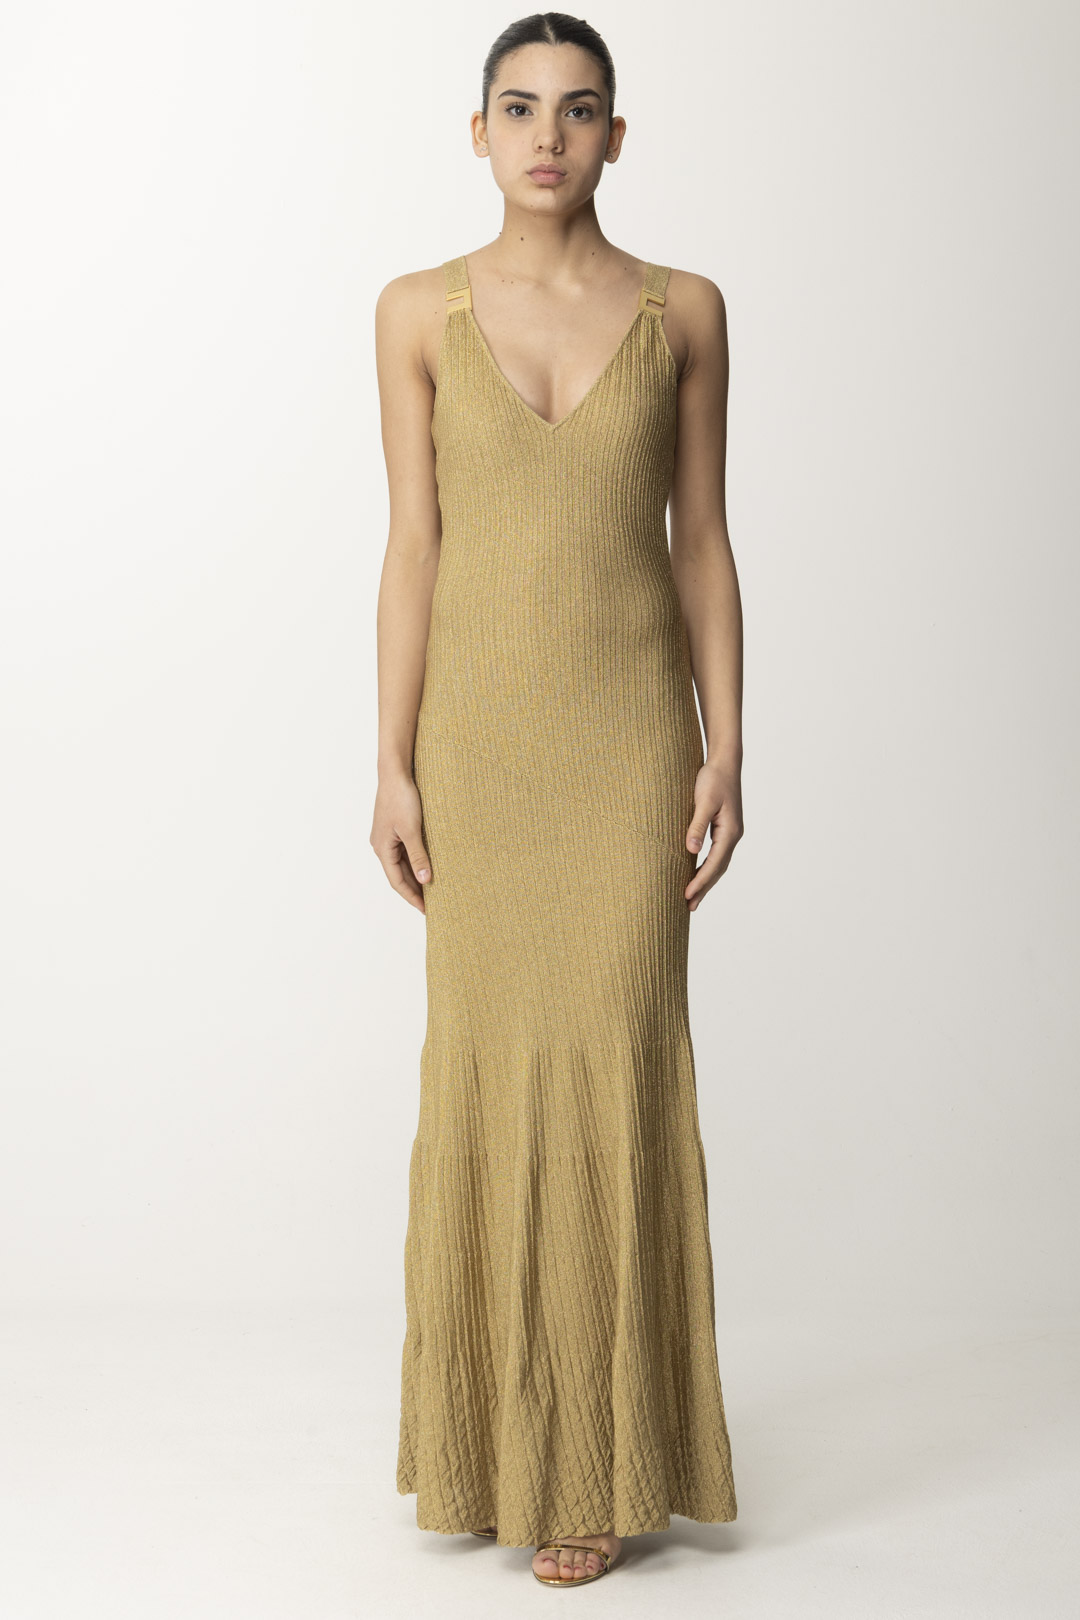 Vorschau: Elisabetta Franchi Metallisches Kleid für den roten Teppich Oro